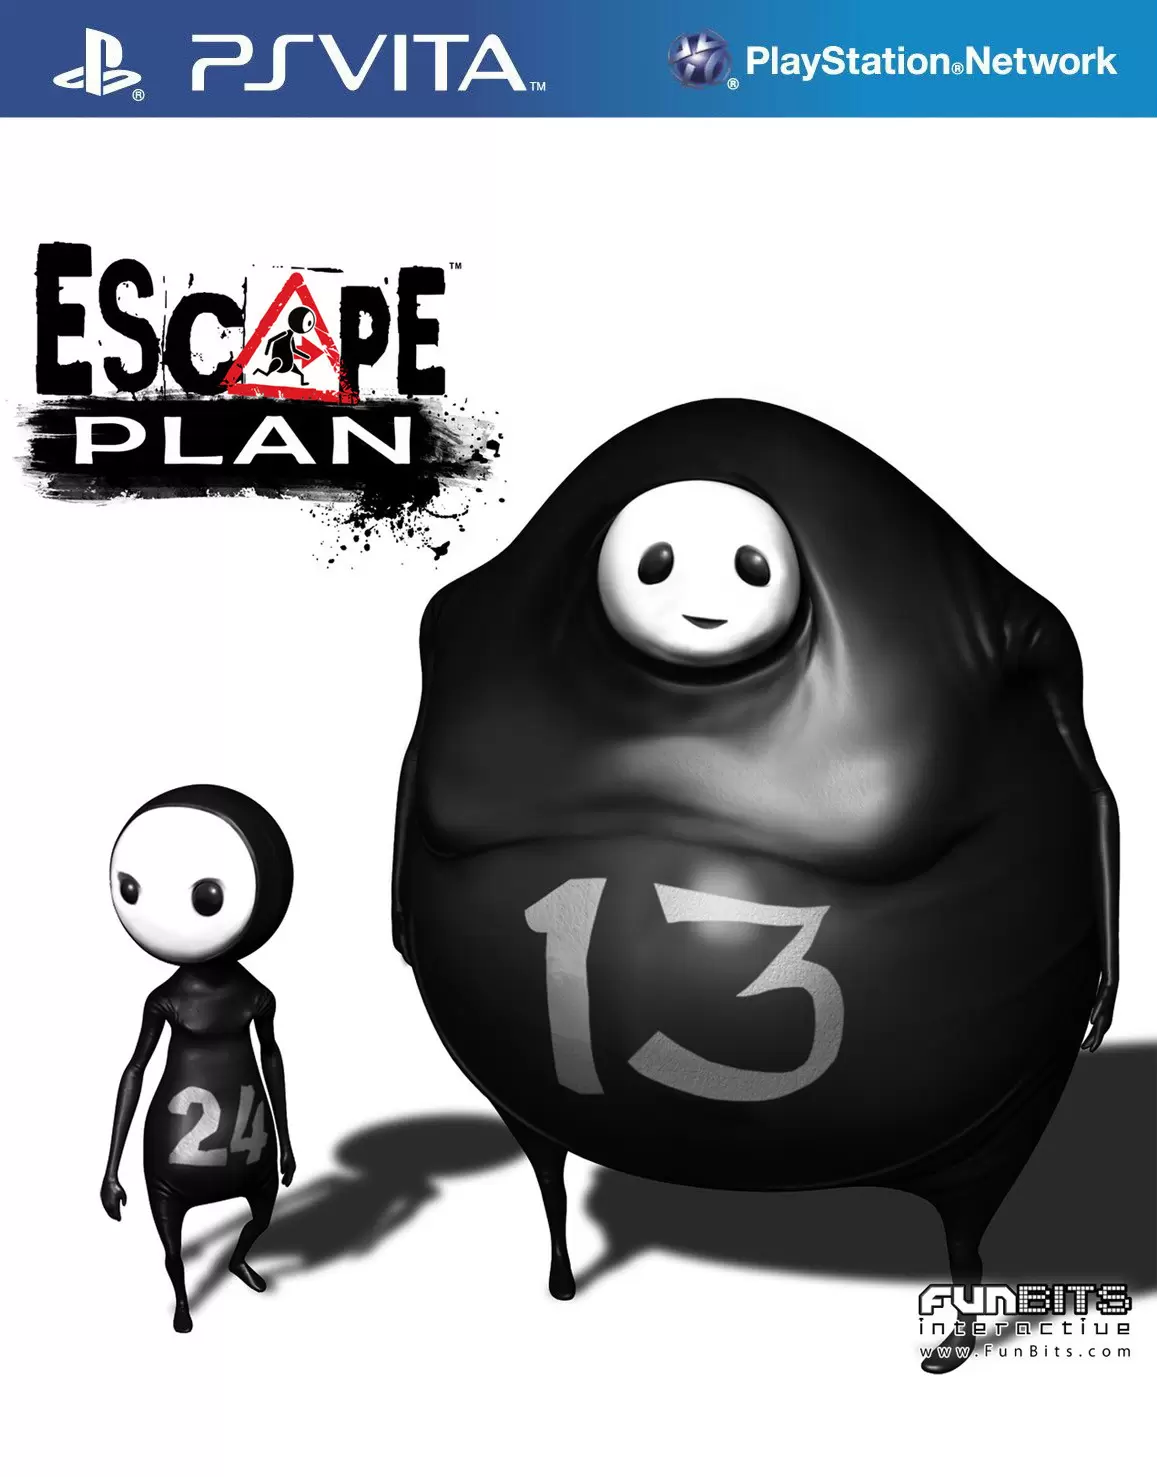 PS Vita Games - Escape Plan